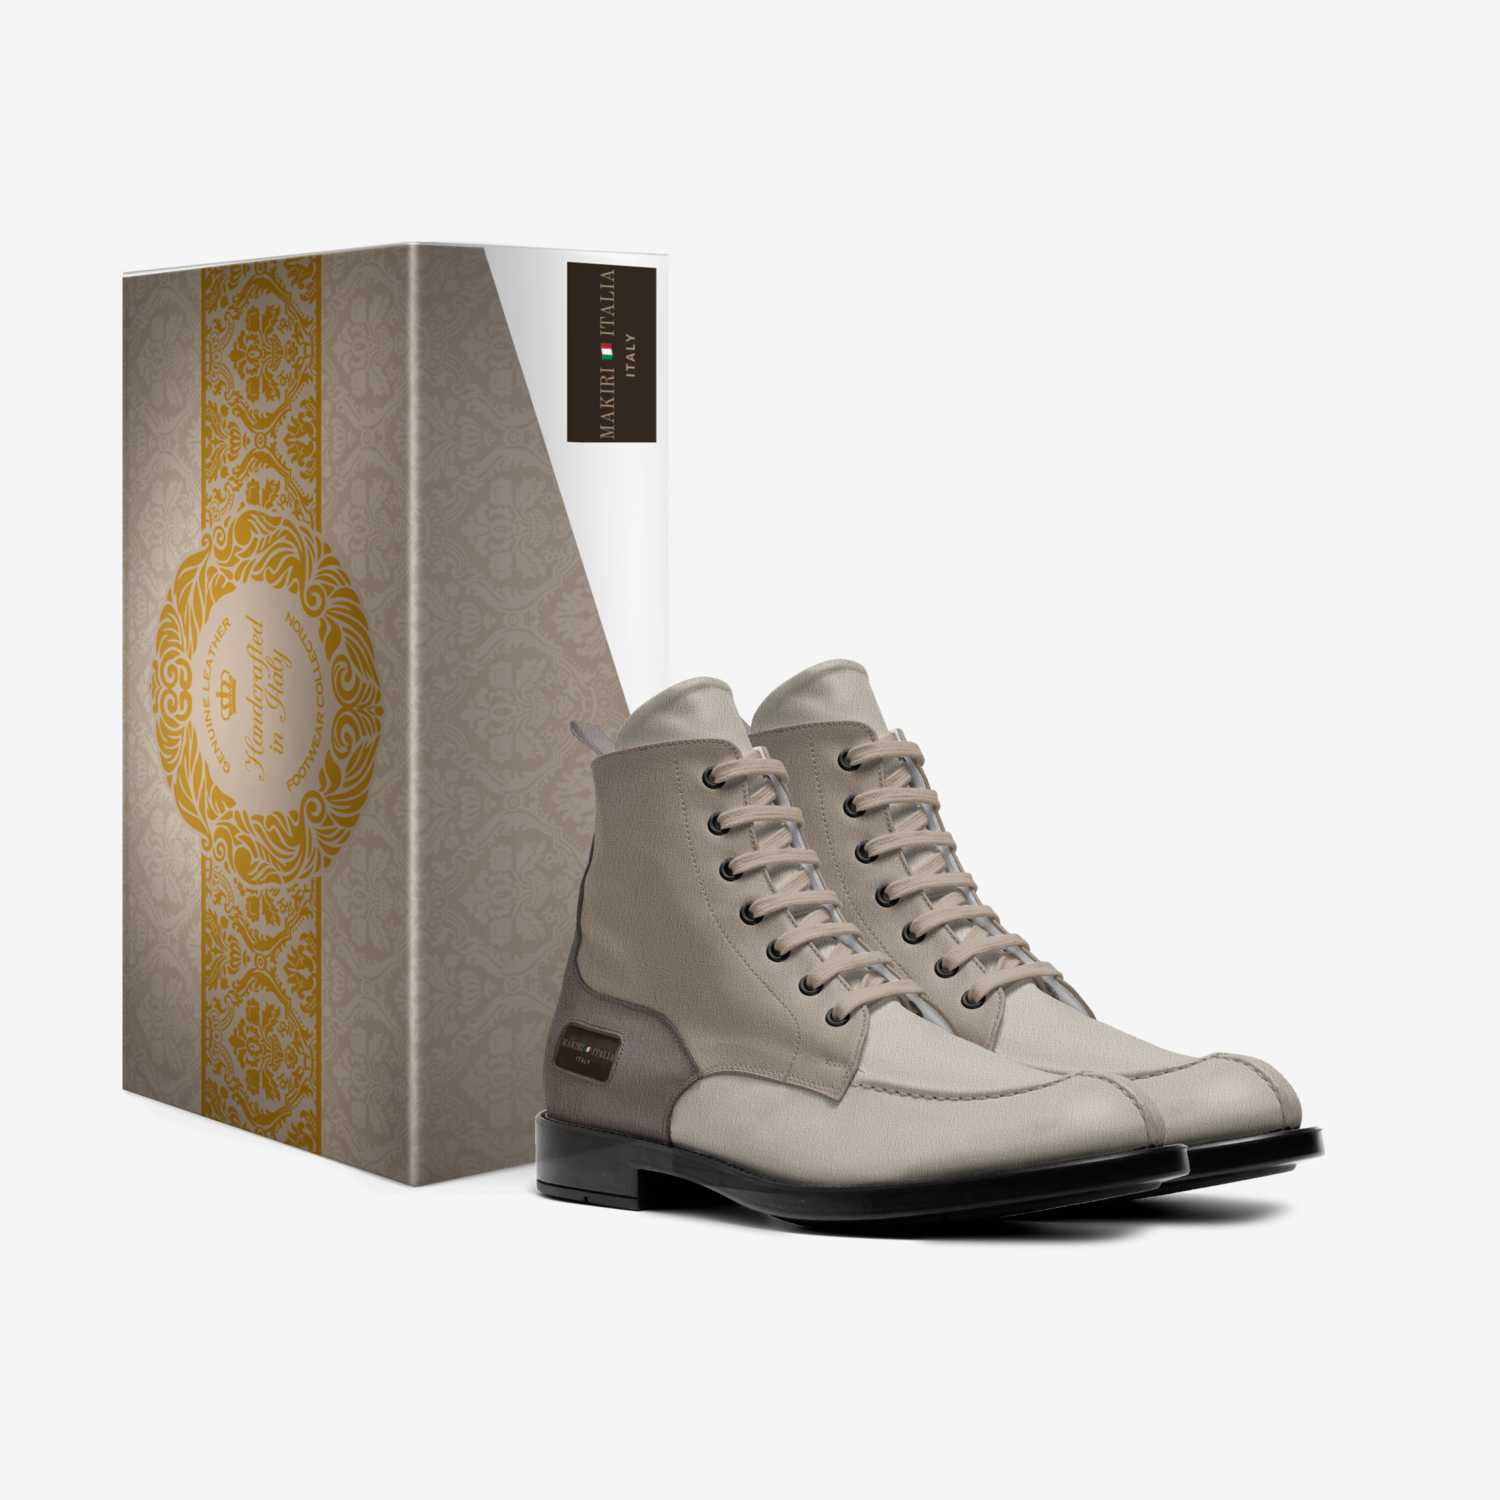 MAKIRI 🇮🇹 ITALIA custom made in Italy shoes by Makiri Duckett | Box view